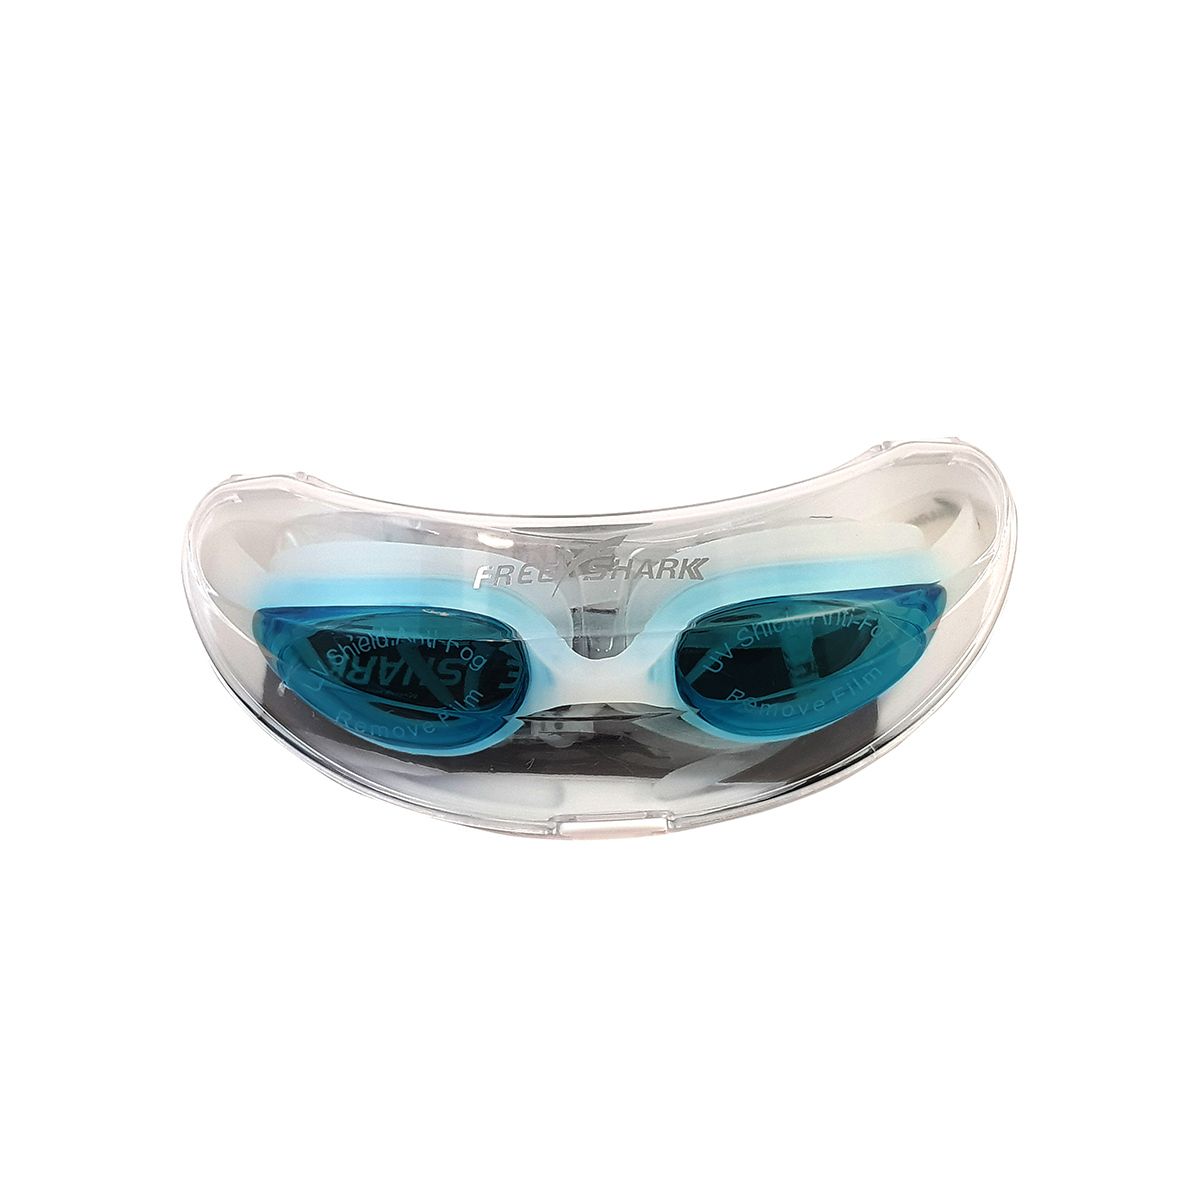  عینک شنا فری شارک مدل MC-2300 -  - 2